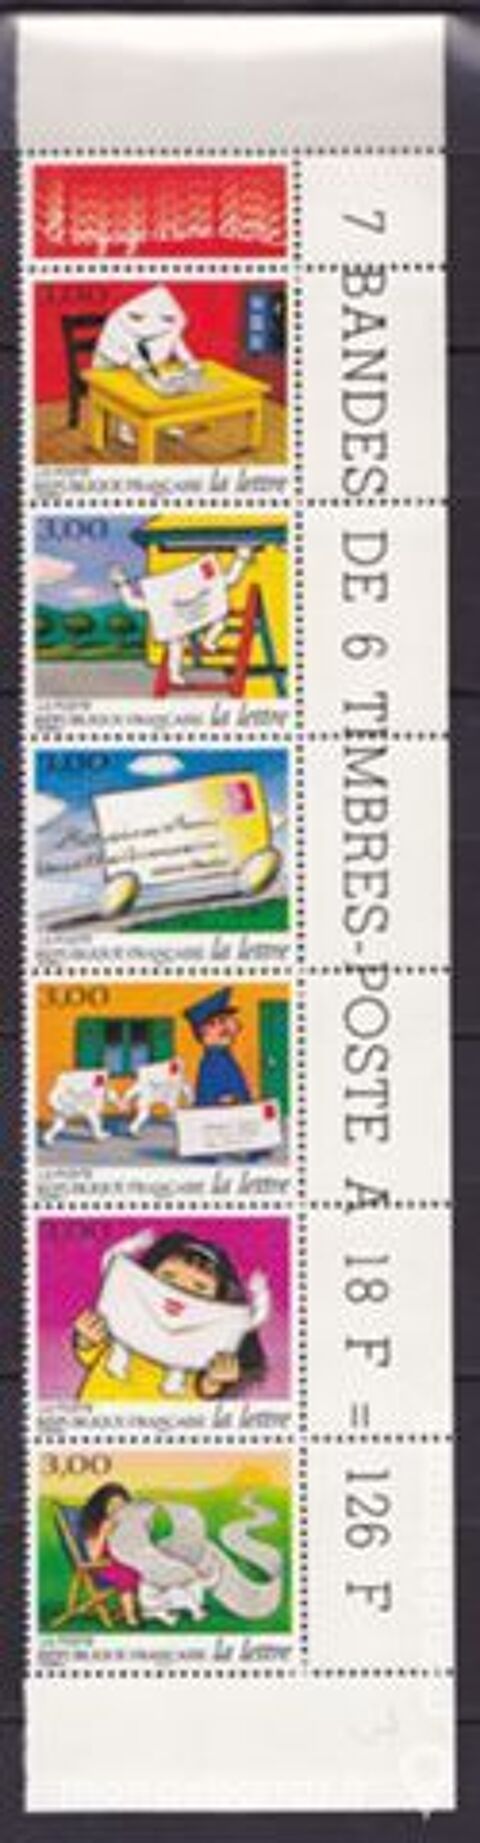 FRANCE Timbres Bande  Journe de la lettre 1997 5 Jou-ls-Tours (37)